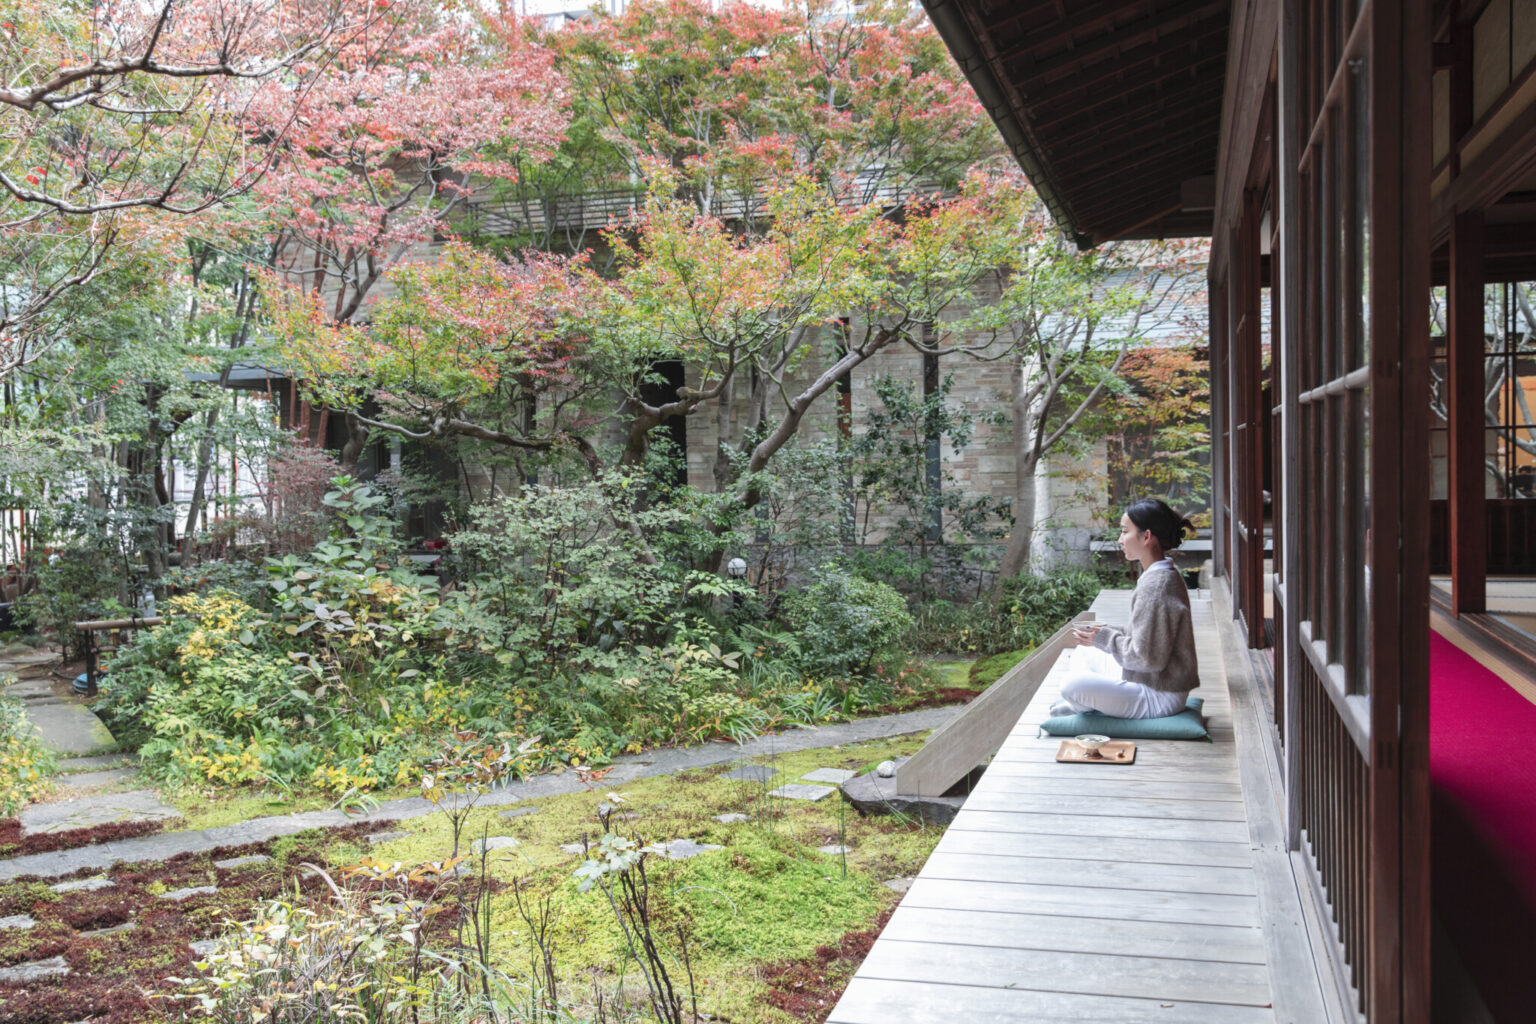 お寺の表通りには桜並木、境内には銀杏、そして庭には紅葉と、四季折々の表情を楽しめる。和室はテーブル席だが、縁側に出ての一服も可能。